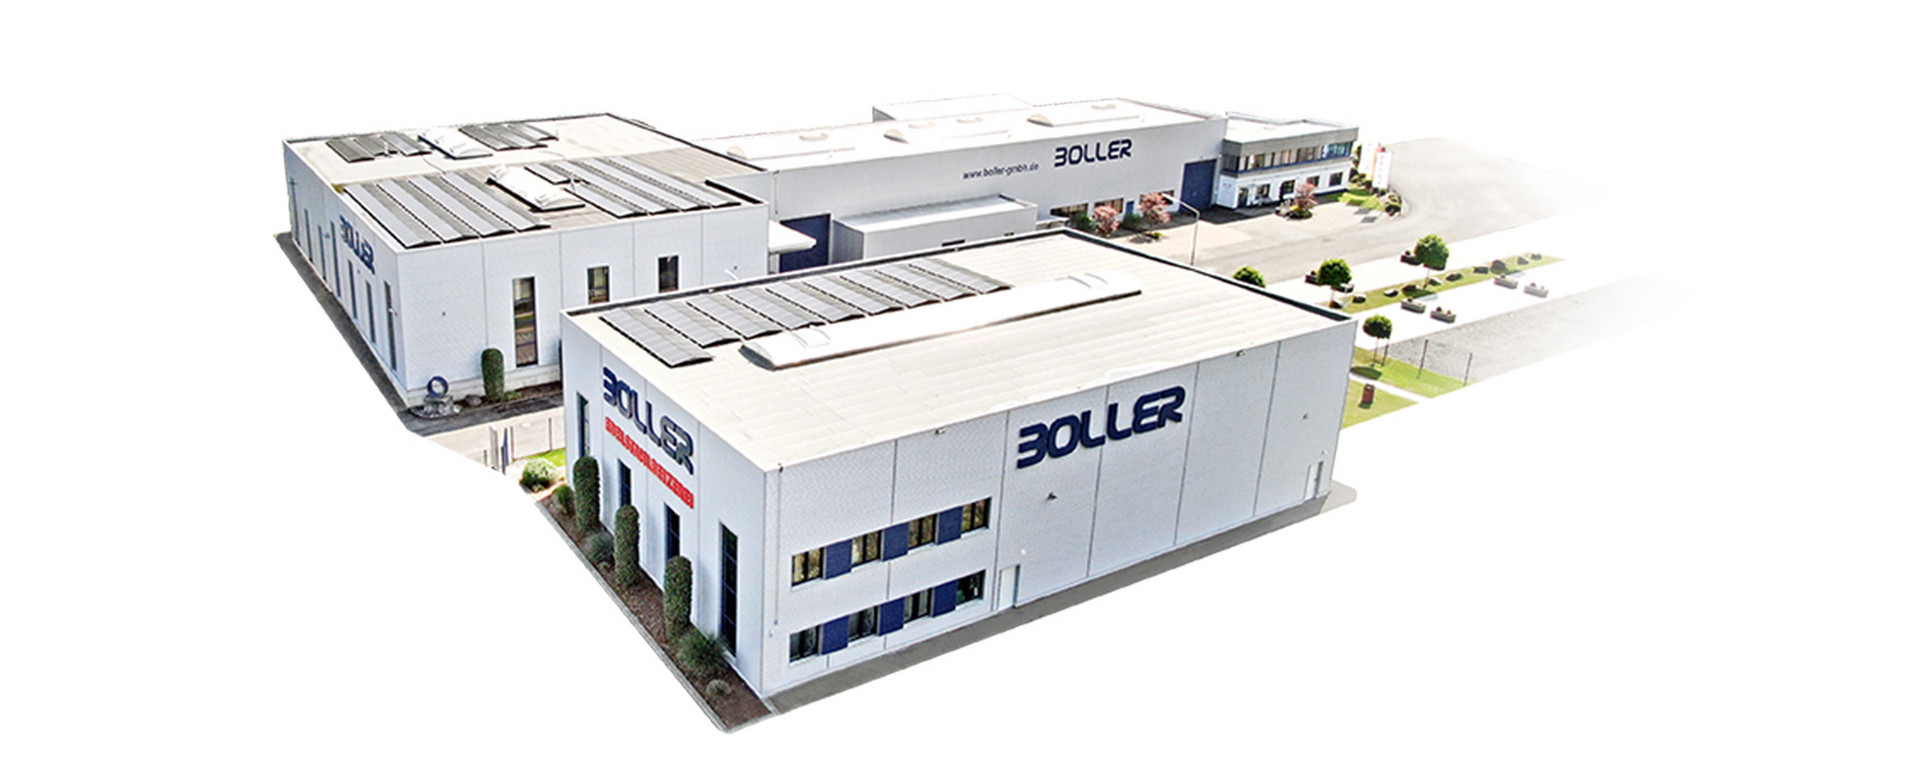 BOLLER GmbH & Co. KG